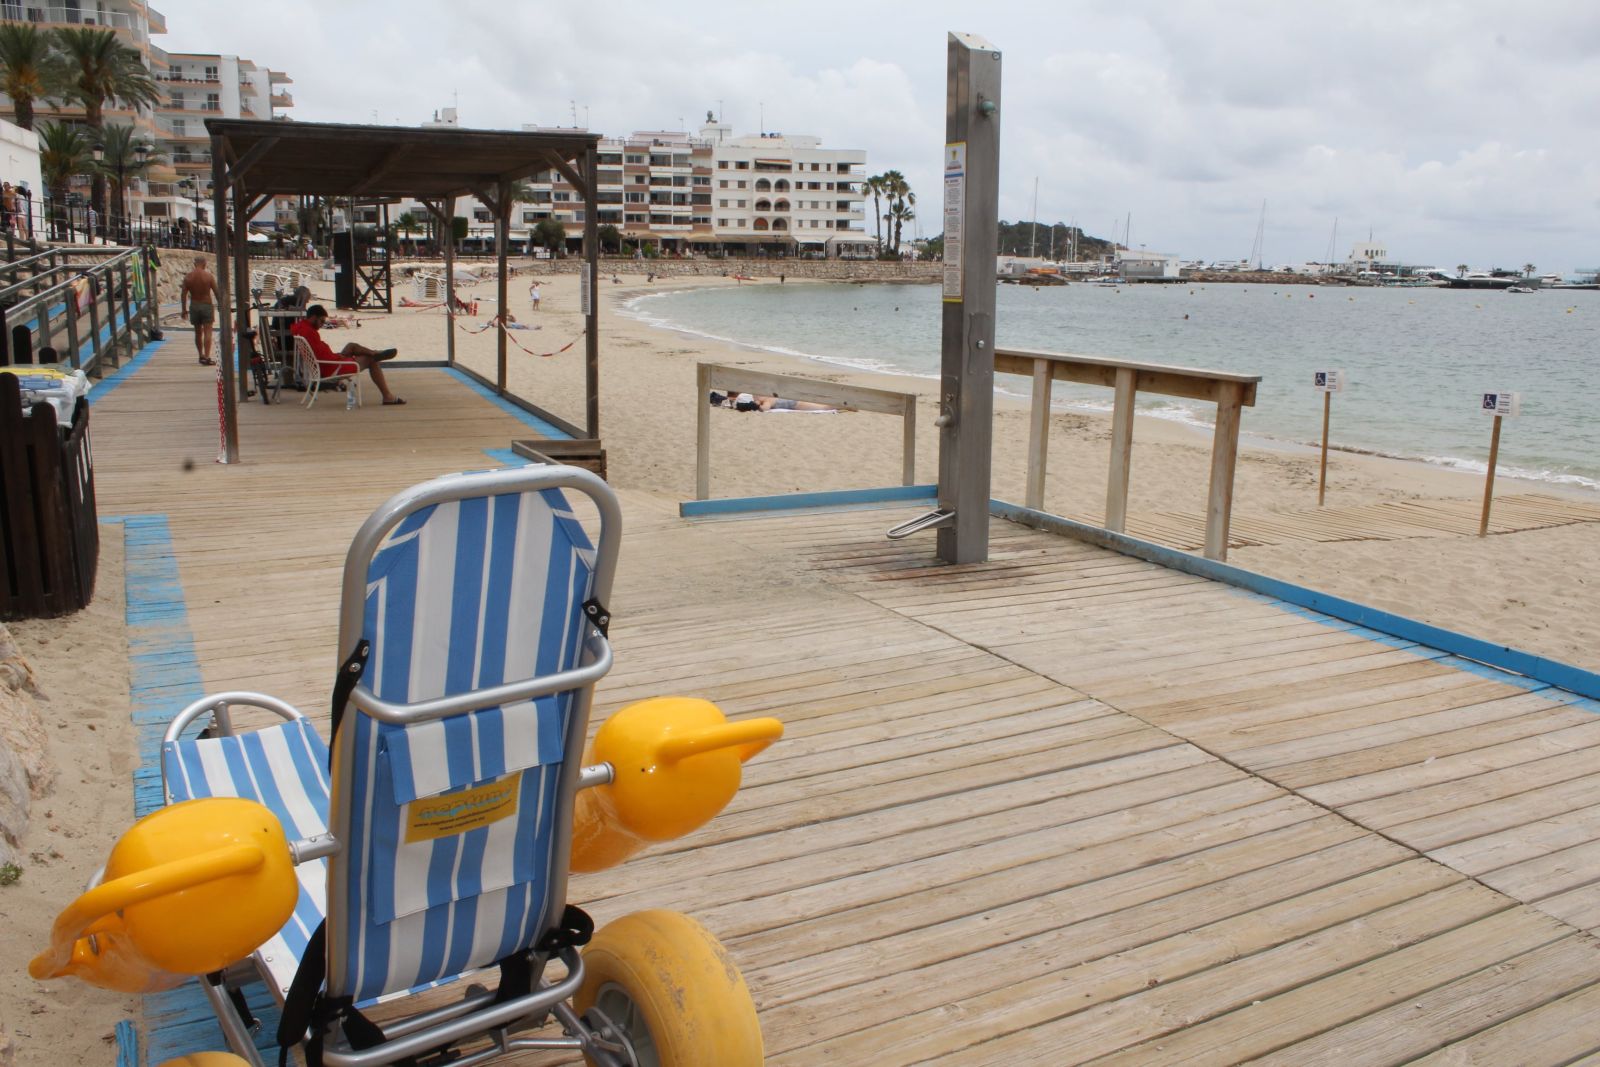 El servicio de baño asistido para personas con necesidades especiales de movilidad ya está en marcha en la playa de Santa Eulària